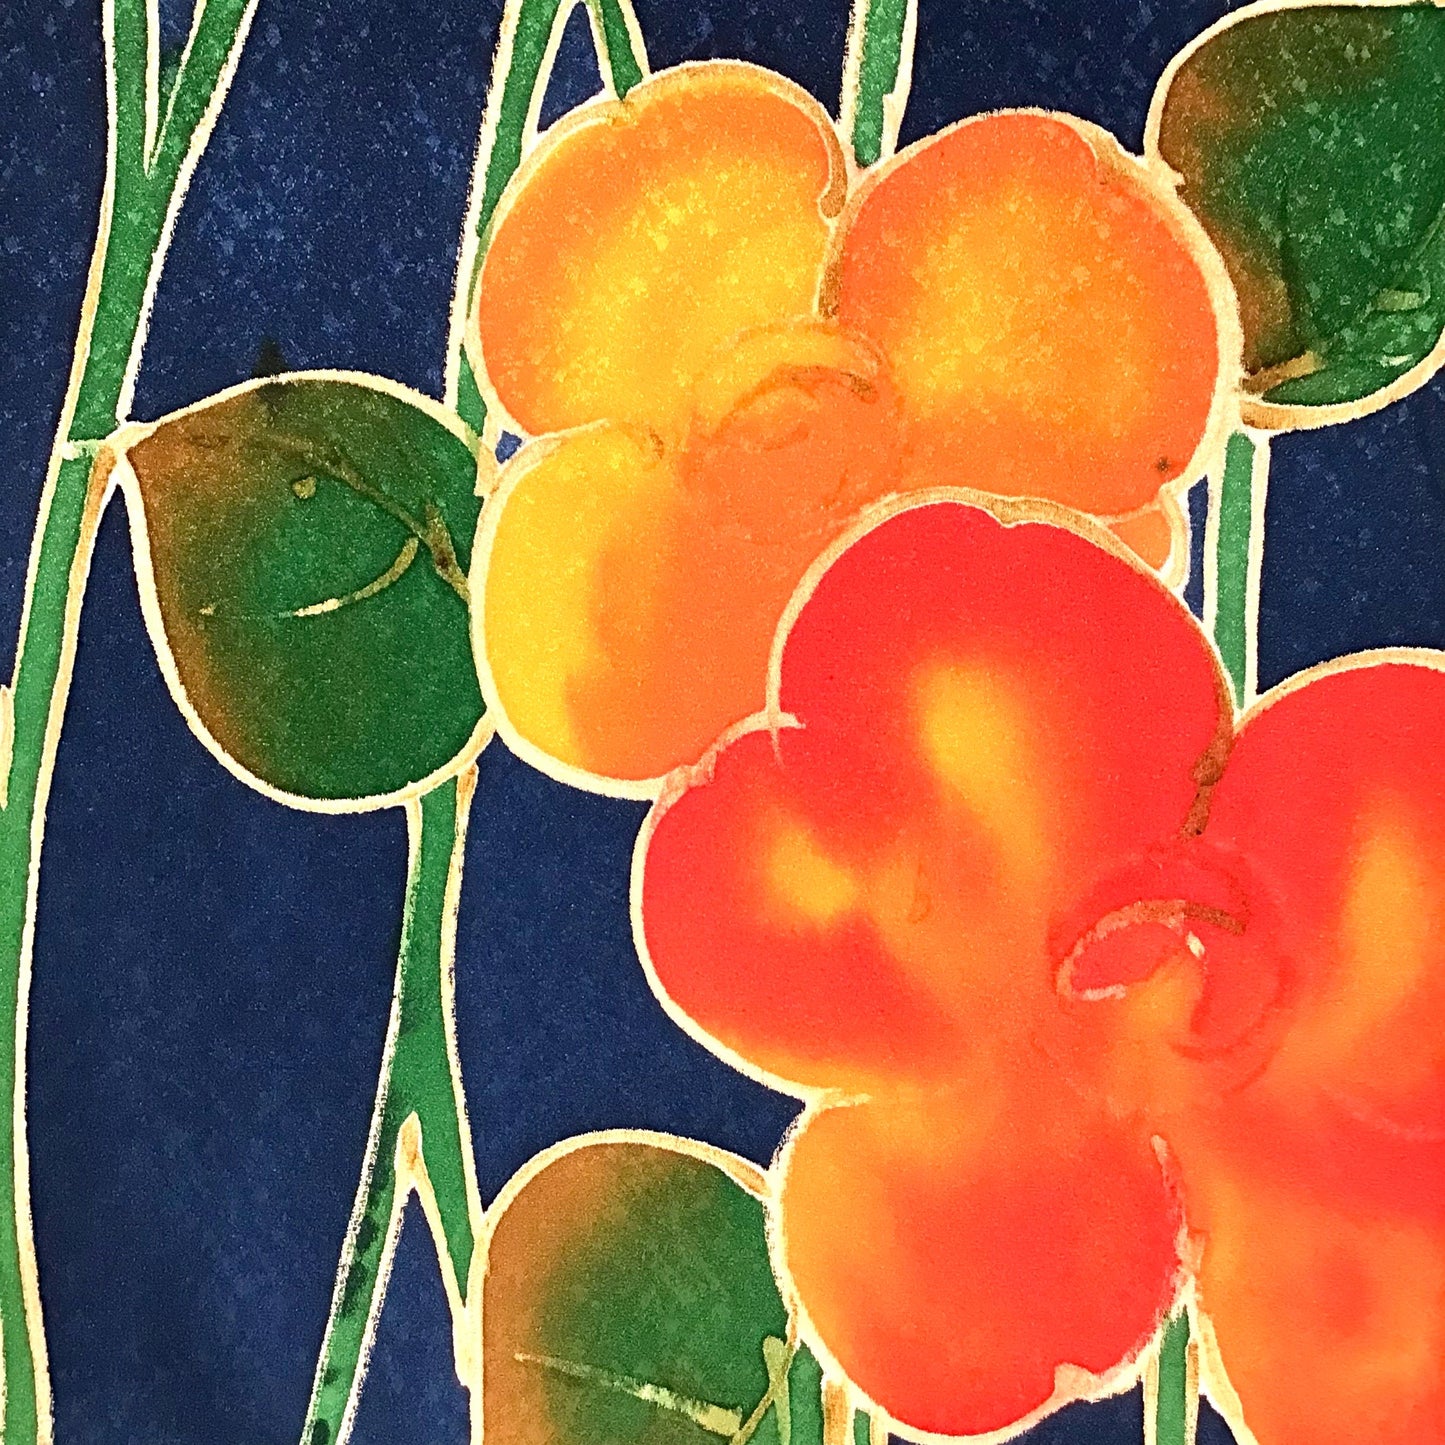 Vintage Kimono ’Blue With Citrus Blossoms’